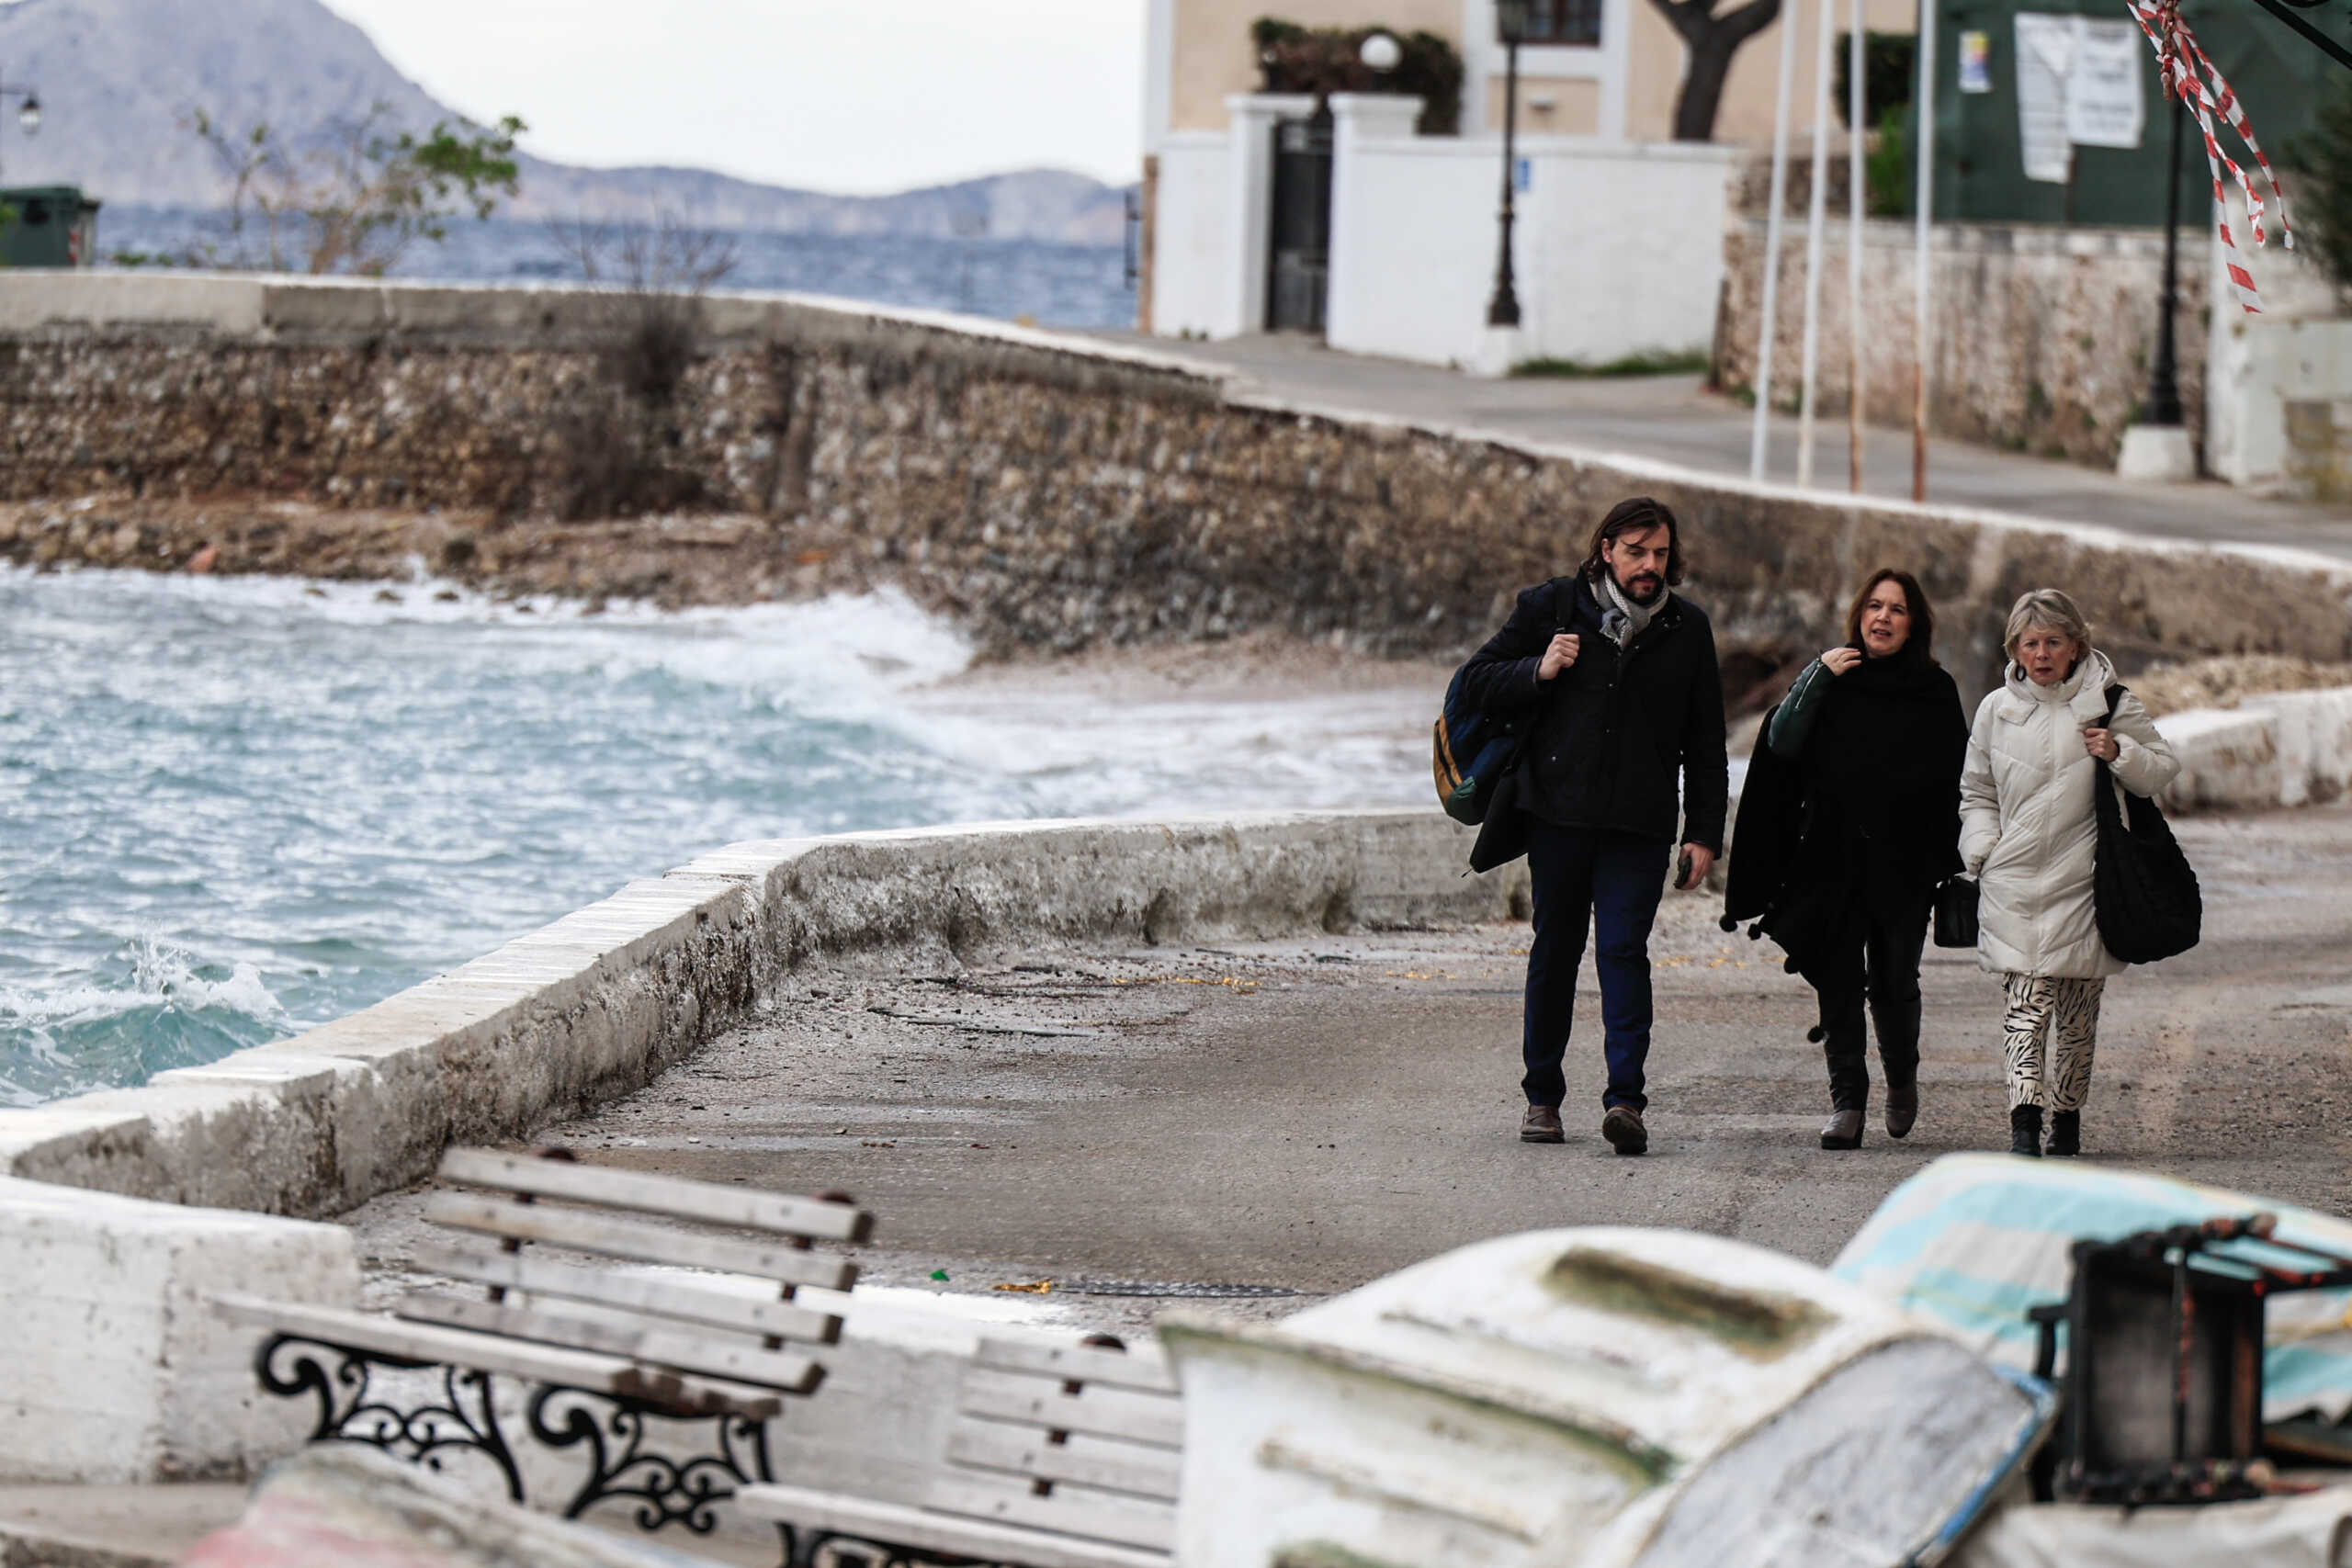 Σπέτσες: Παρατείνουν την παραμονή τους στο νησί οι βουλευτές του ΣΥΡΙΖΑ – Προβληματίζει ο καιρός